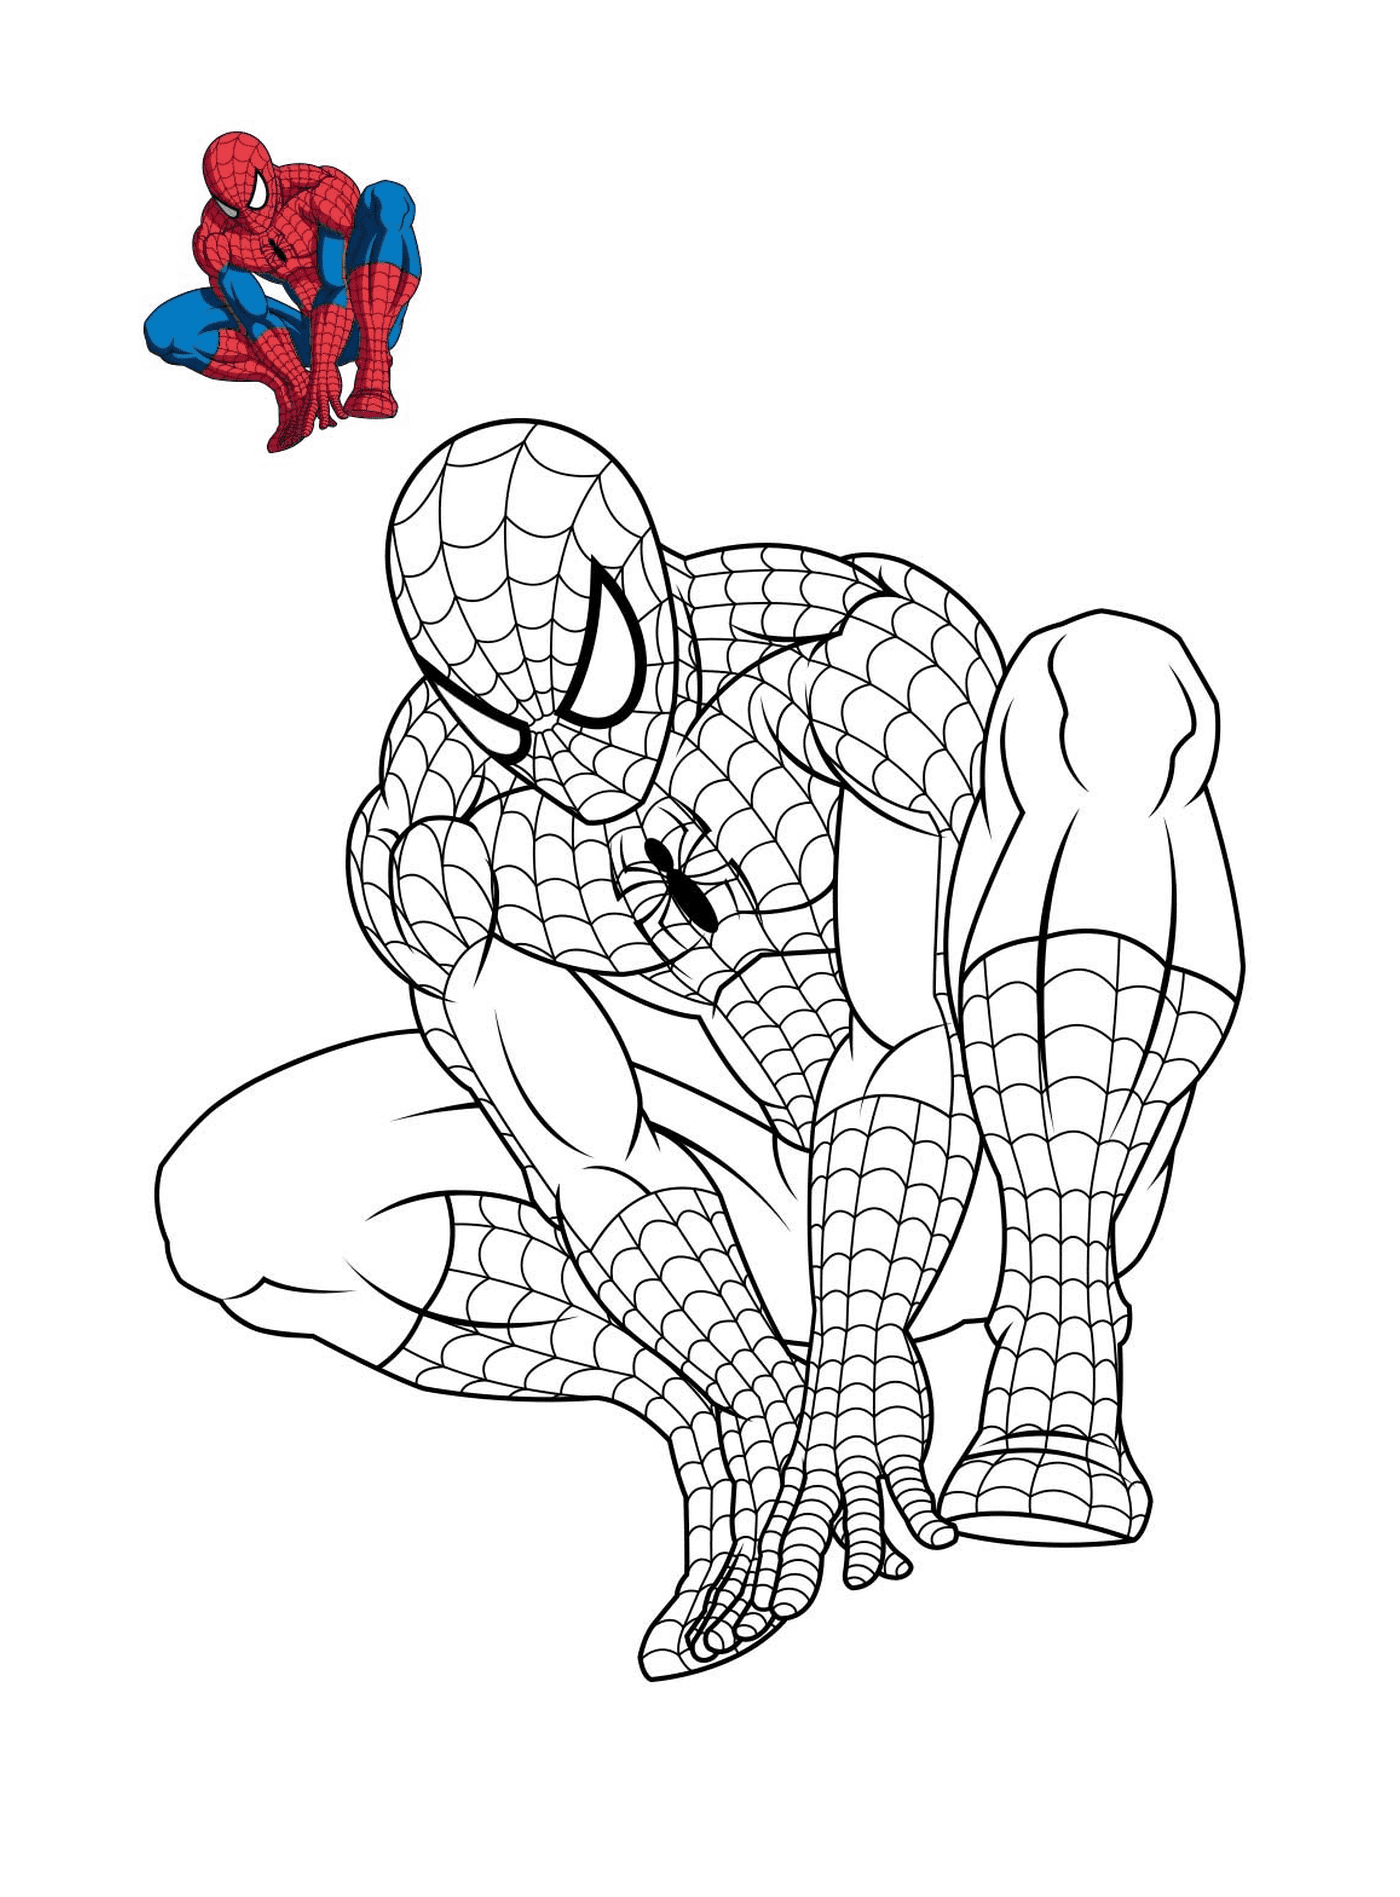  Spider-Man pensando en colorear 